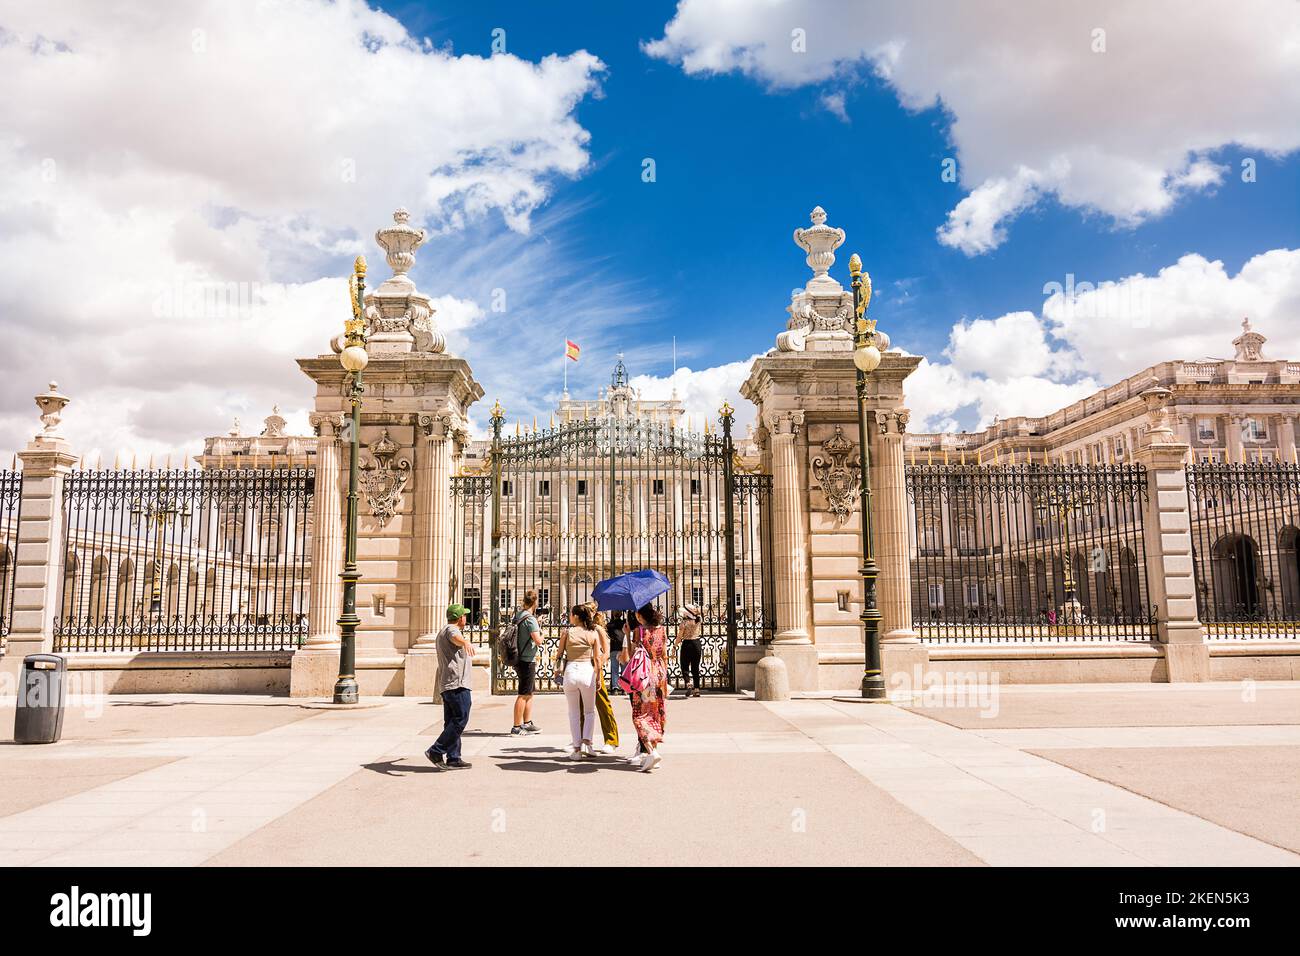 Madrid, España - 20 de junio de 2022: Puerta de entrada a la zona de desfiles del palacio real de Madrid con turistas visitantes Foto de stock